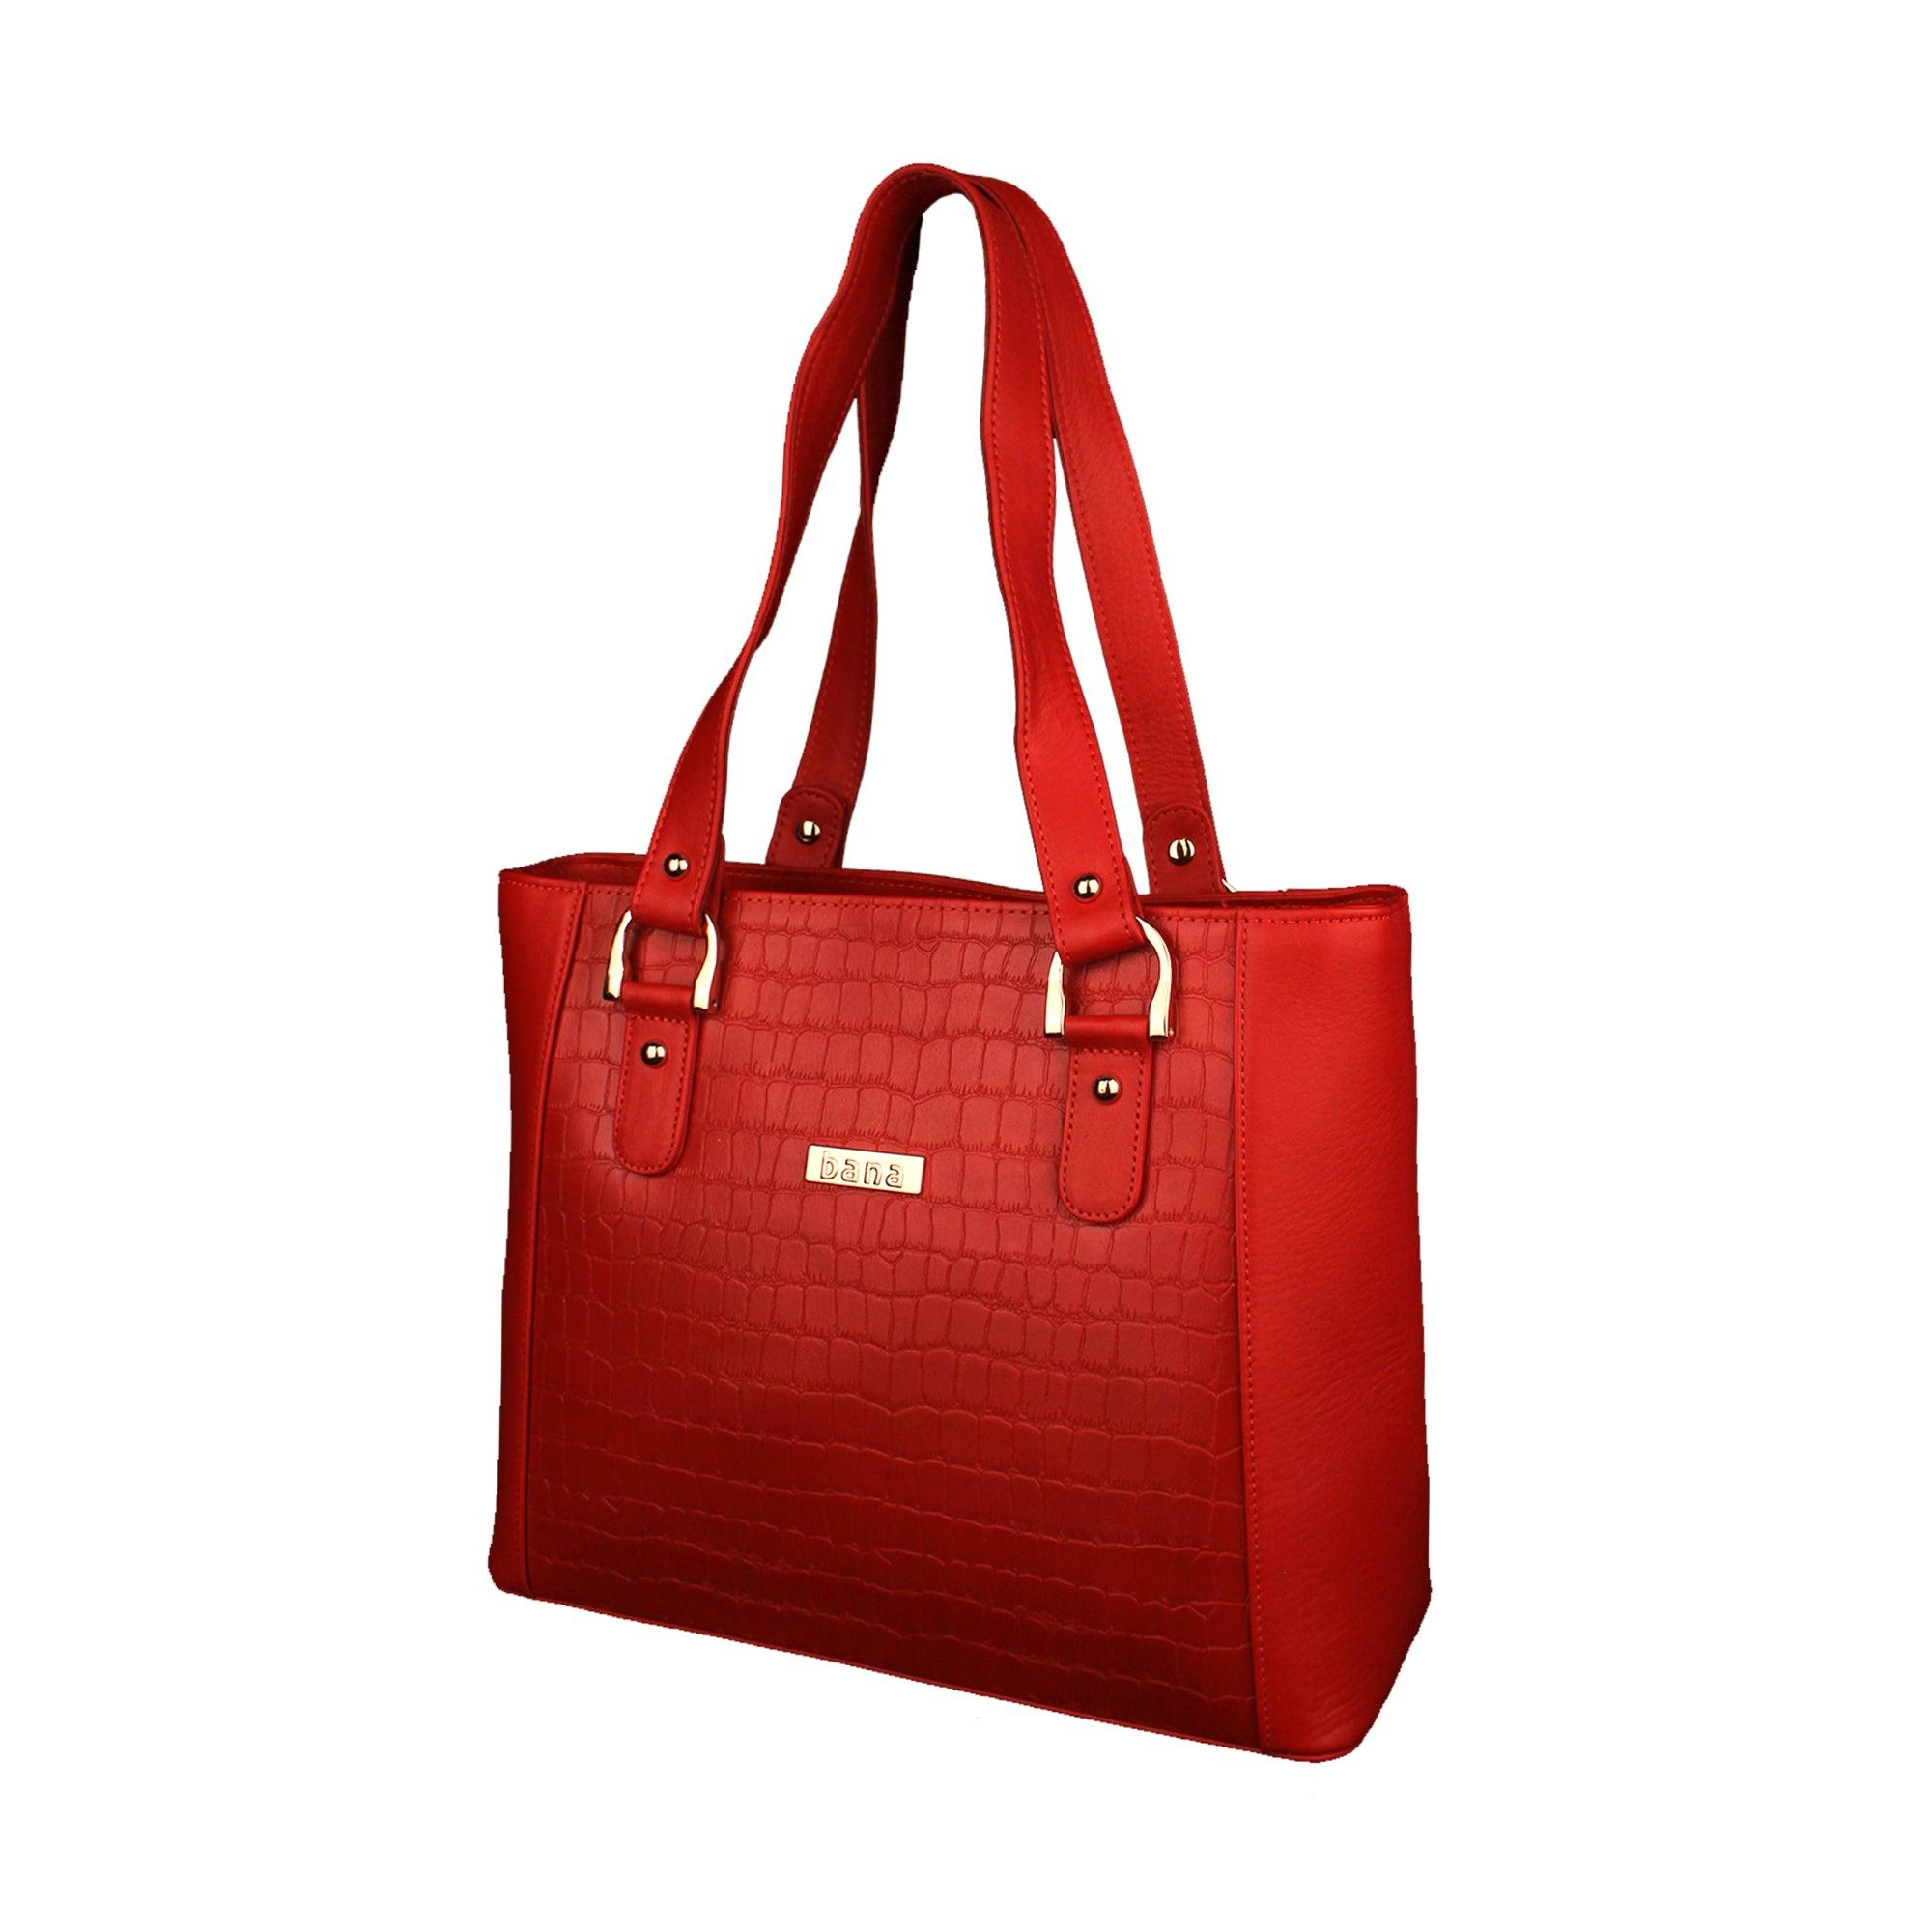 Buy ALDO Women Beige Handbag Beige Online @ Best Price in India | Flipkart .com